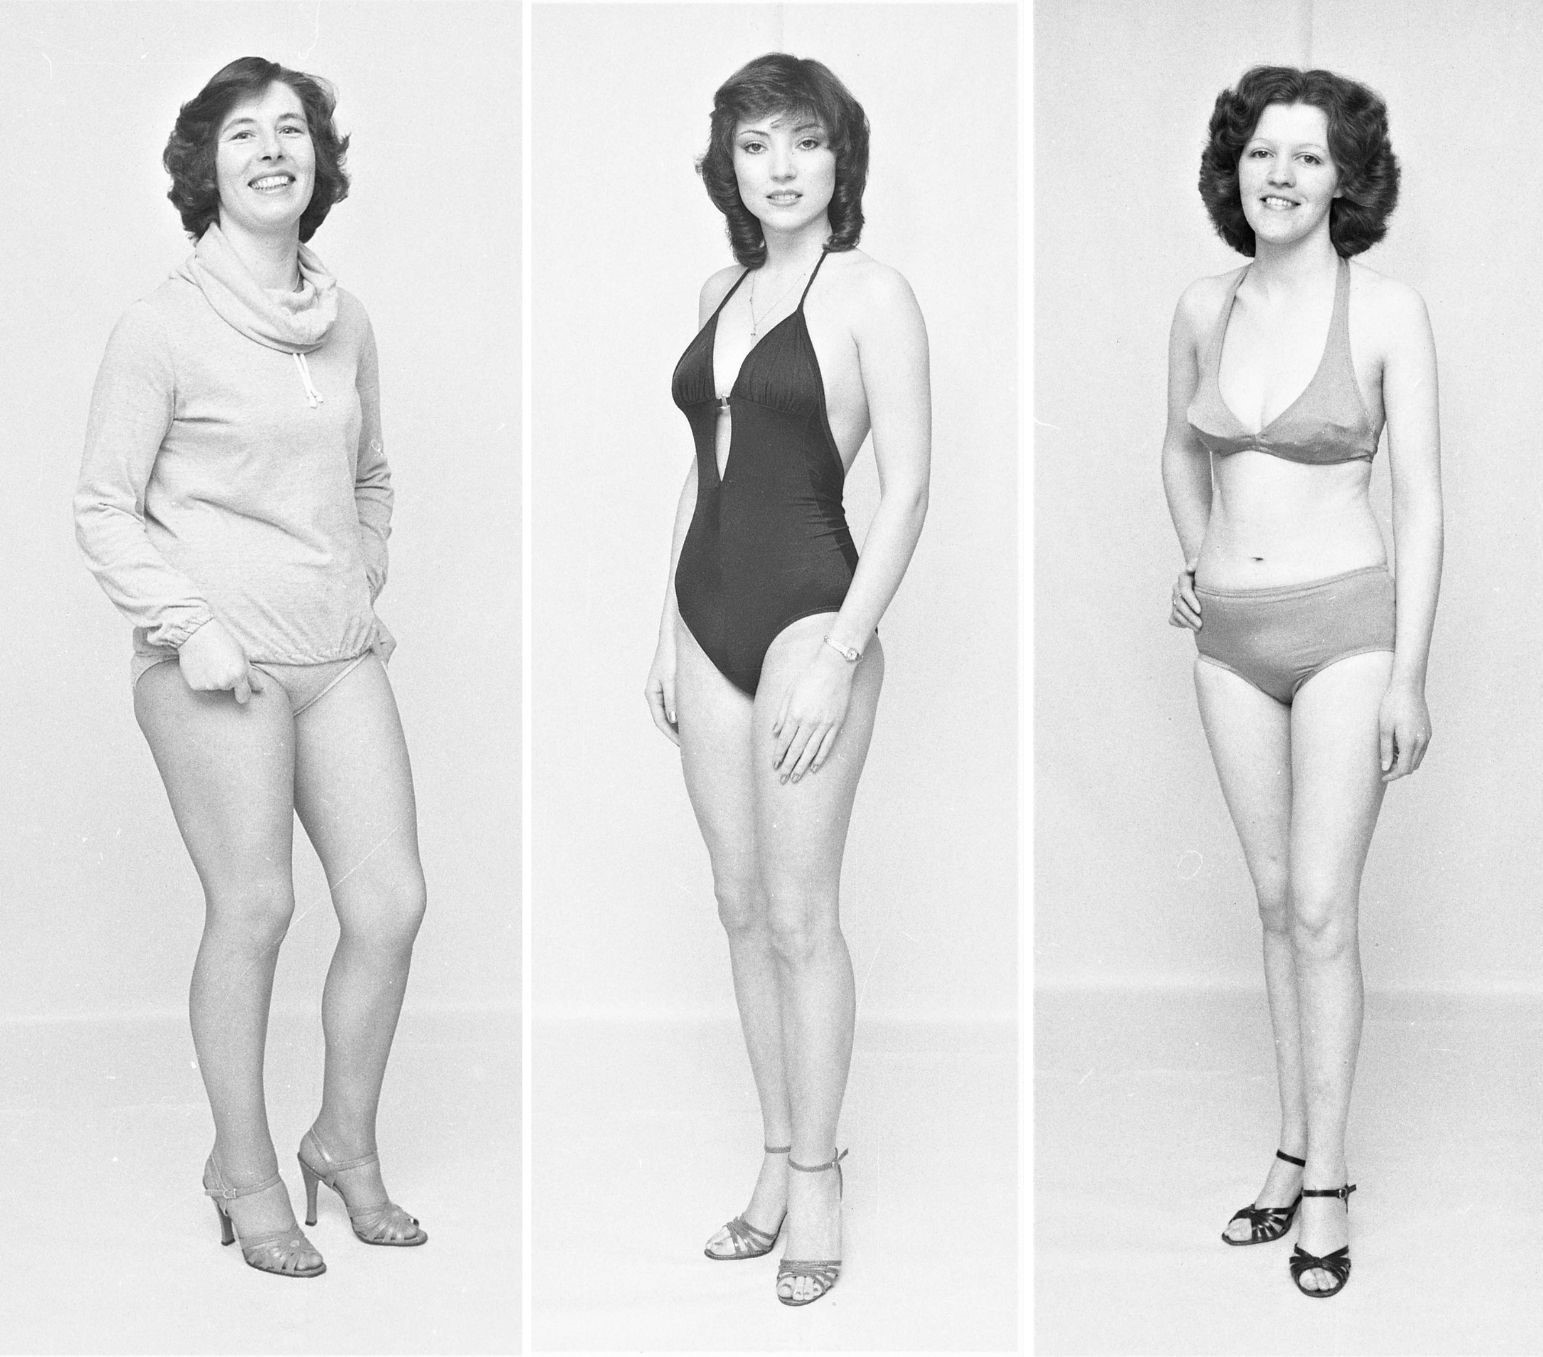 Miss Lovely Legs contestants, 1980.